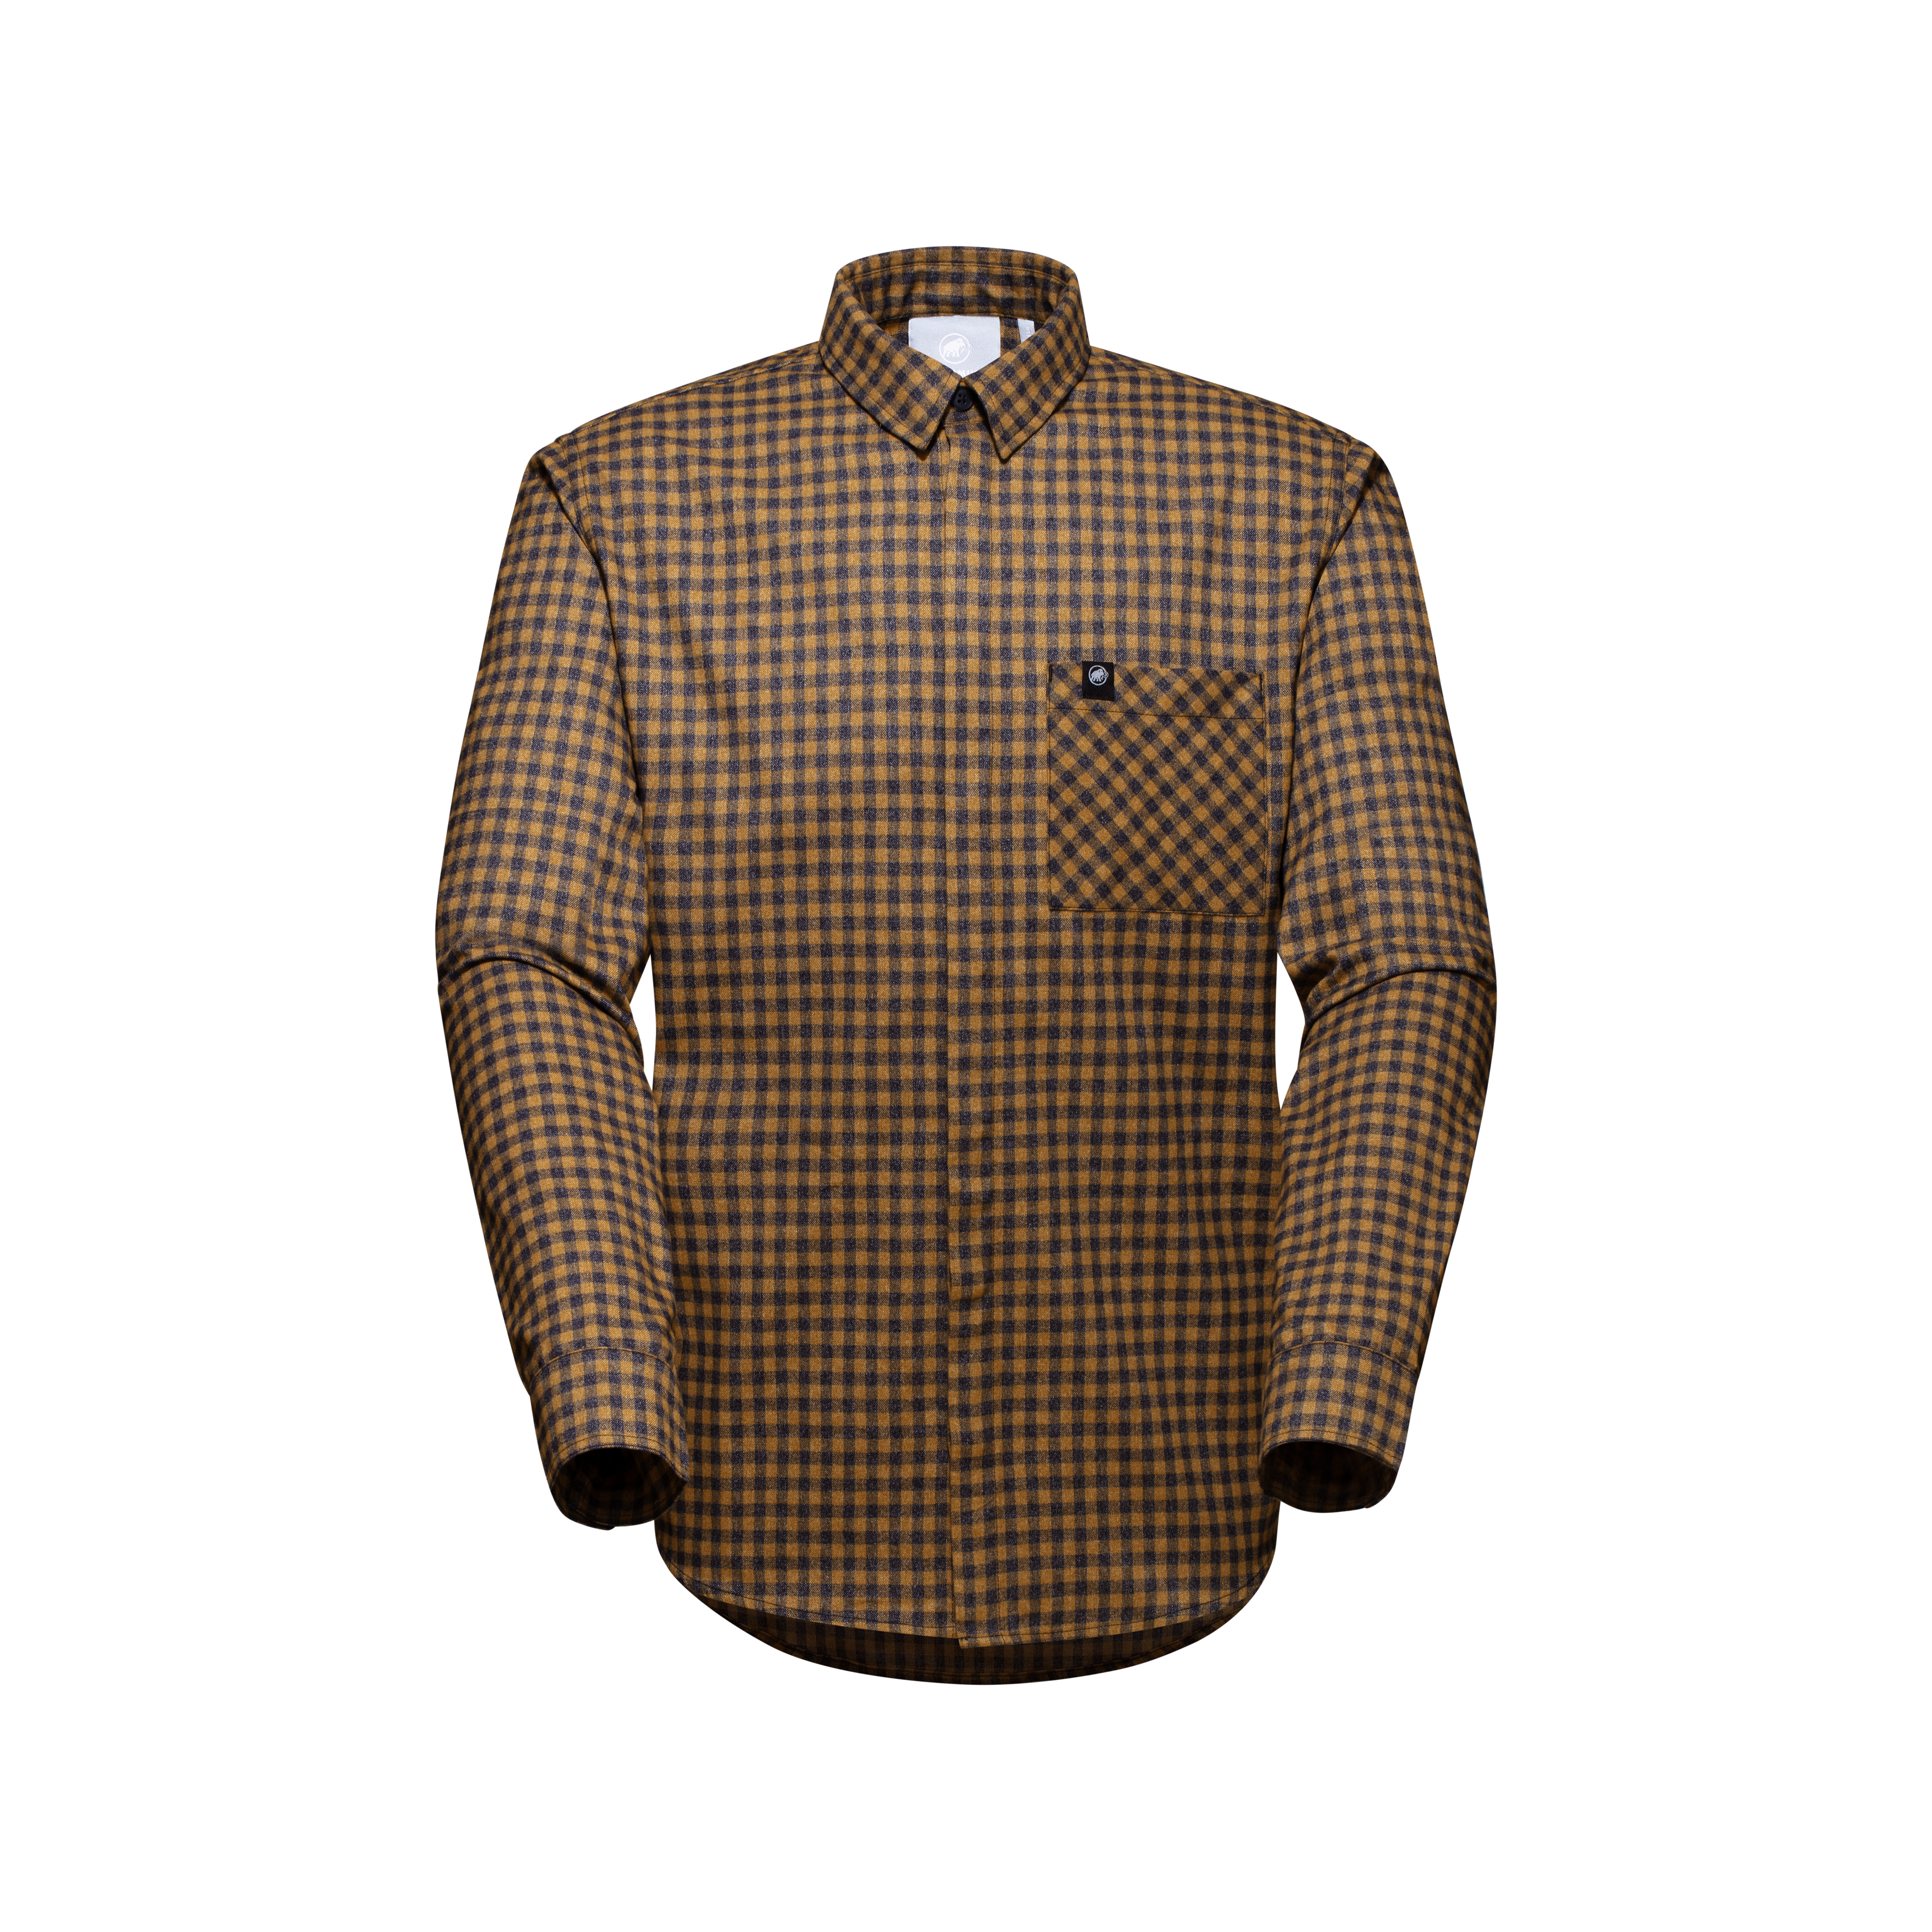 Winter Longsleeve Shirt Men - cheetah-black, XL thumbnail